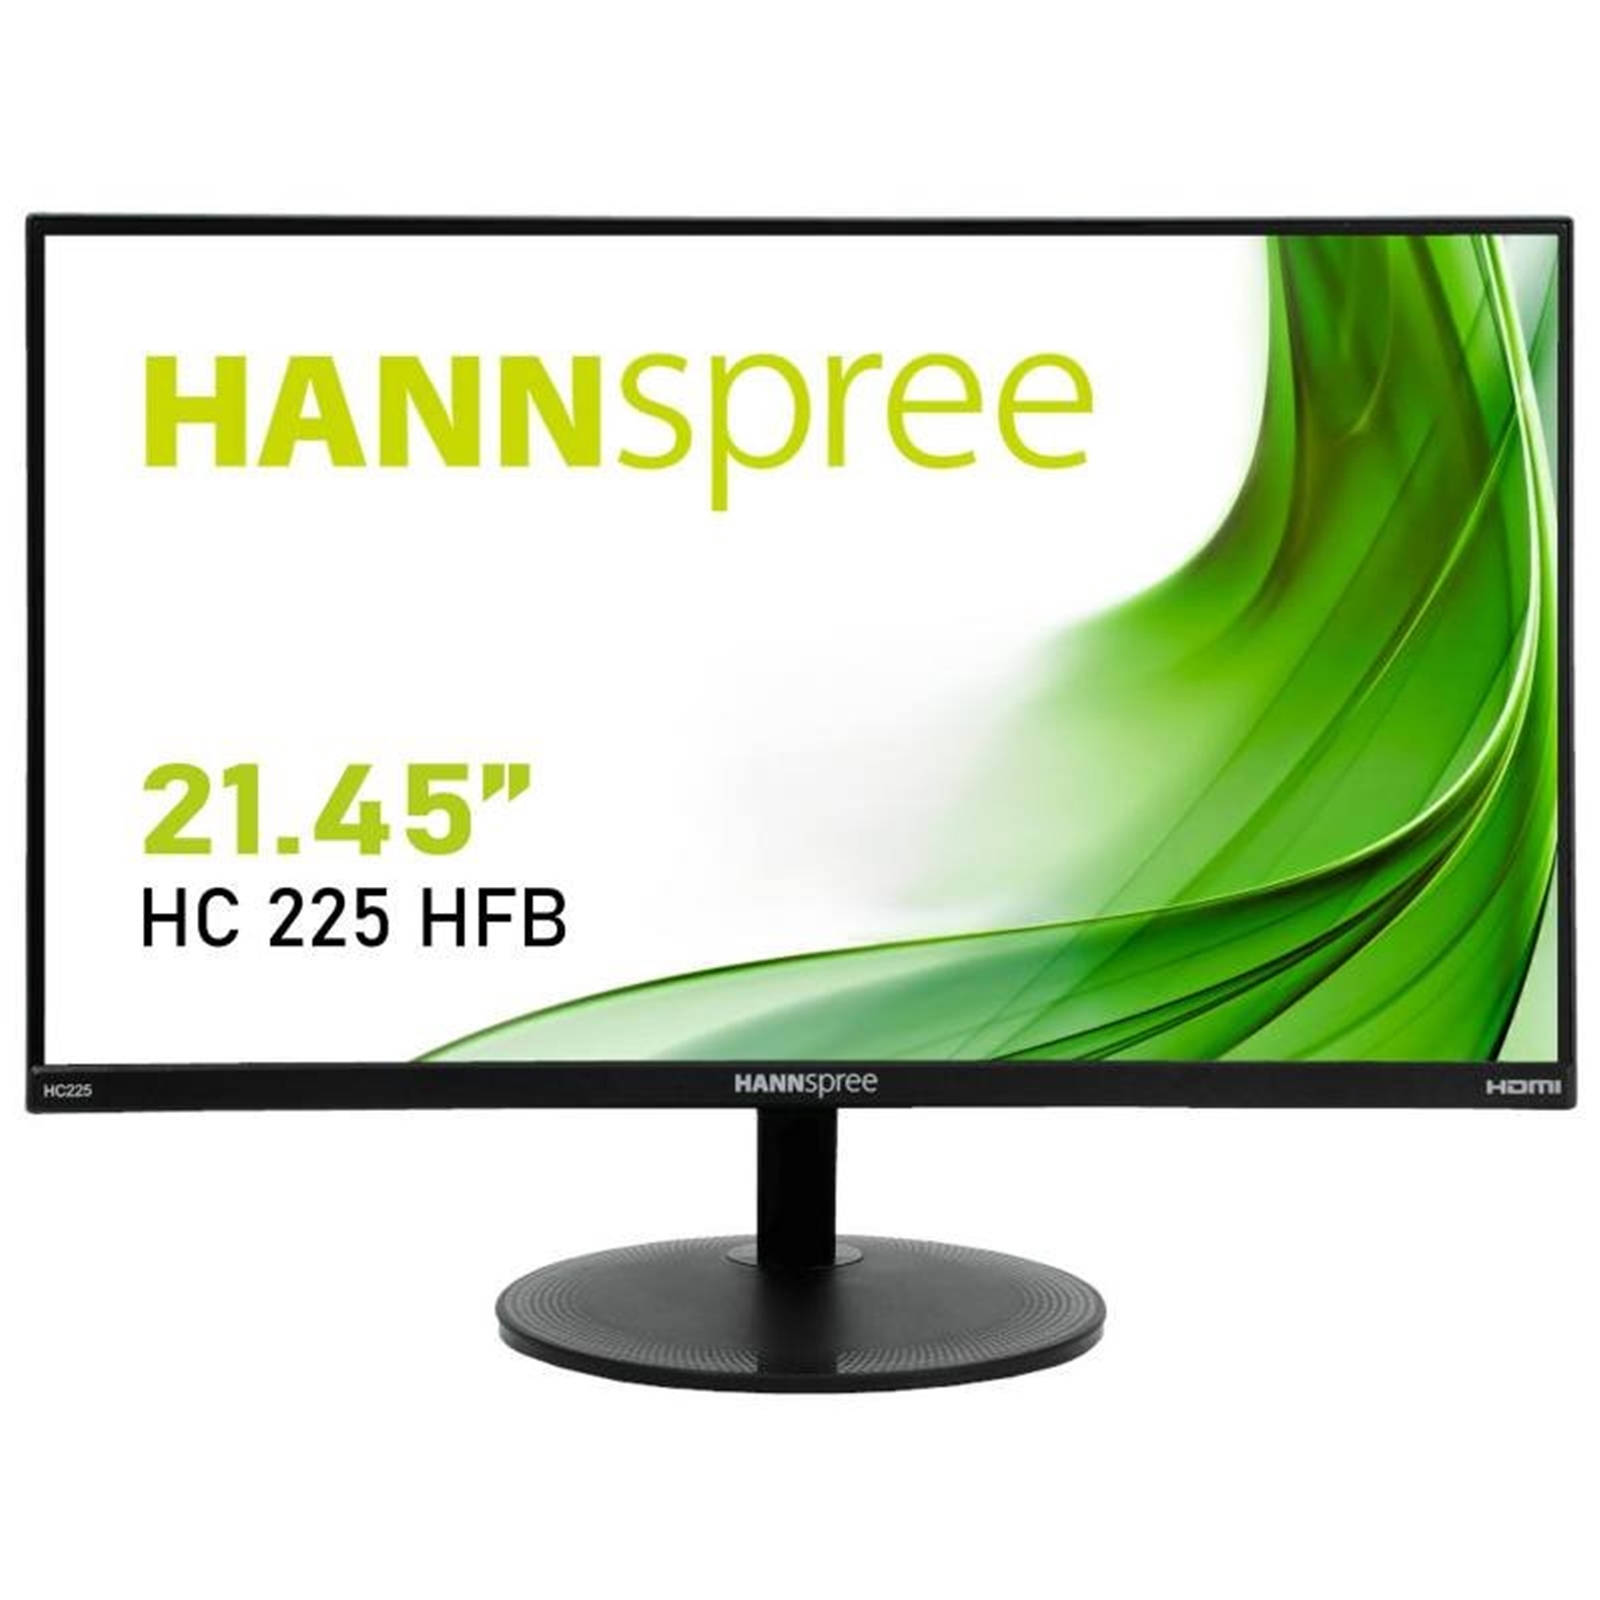 Hannspree HC225HFB 21.45'' Full HD Monitor, 5ms, 60Hz, HDMI, VGA, Speakers, VESA, Tilt, Frameless